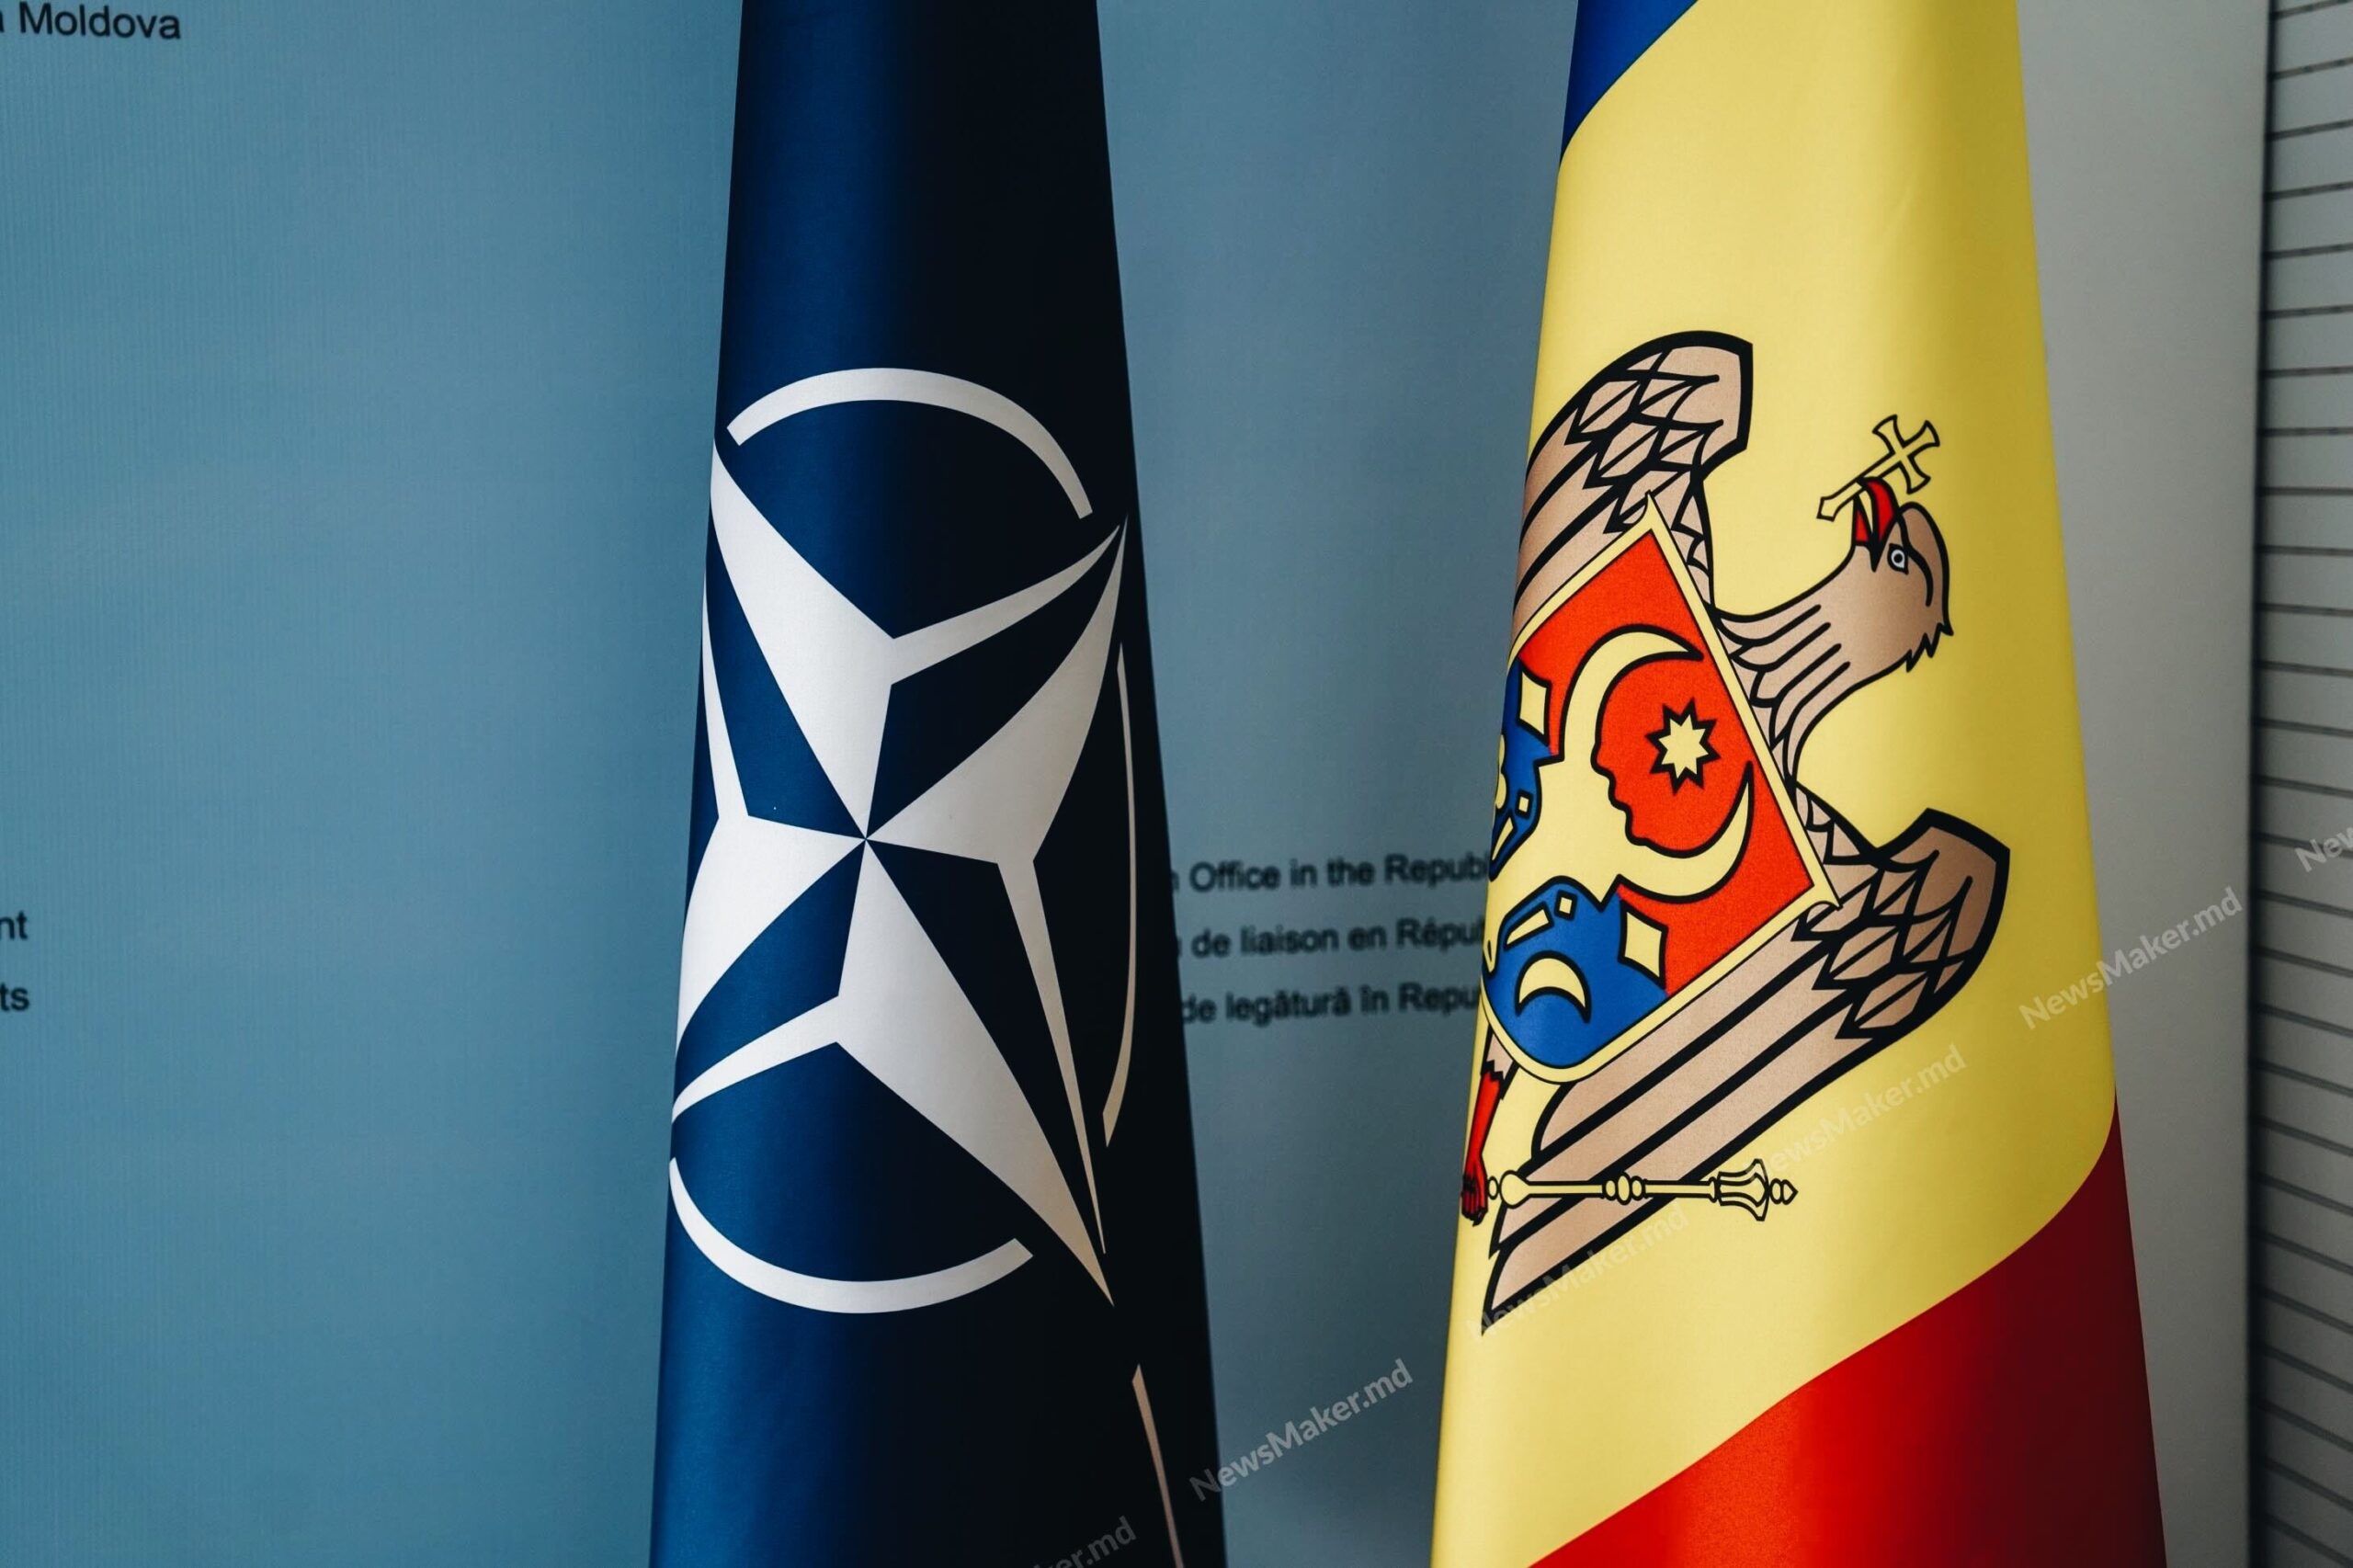 (ВИДЕО) «Двери НАТО открыты для европейских демократий». Глава управления НАТО о нейтралитете Молдовы и войне в Украине. Интервью NM